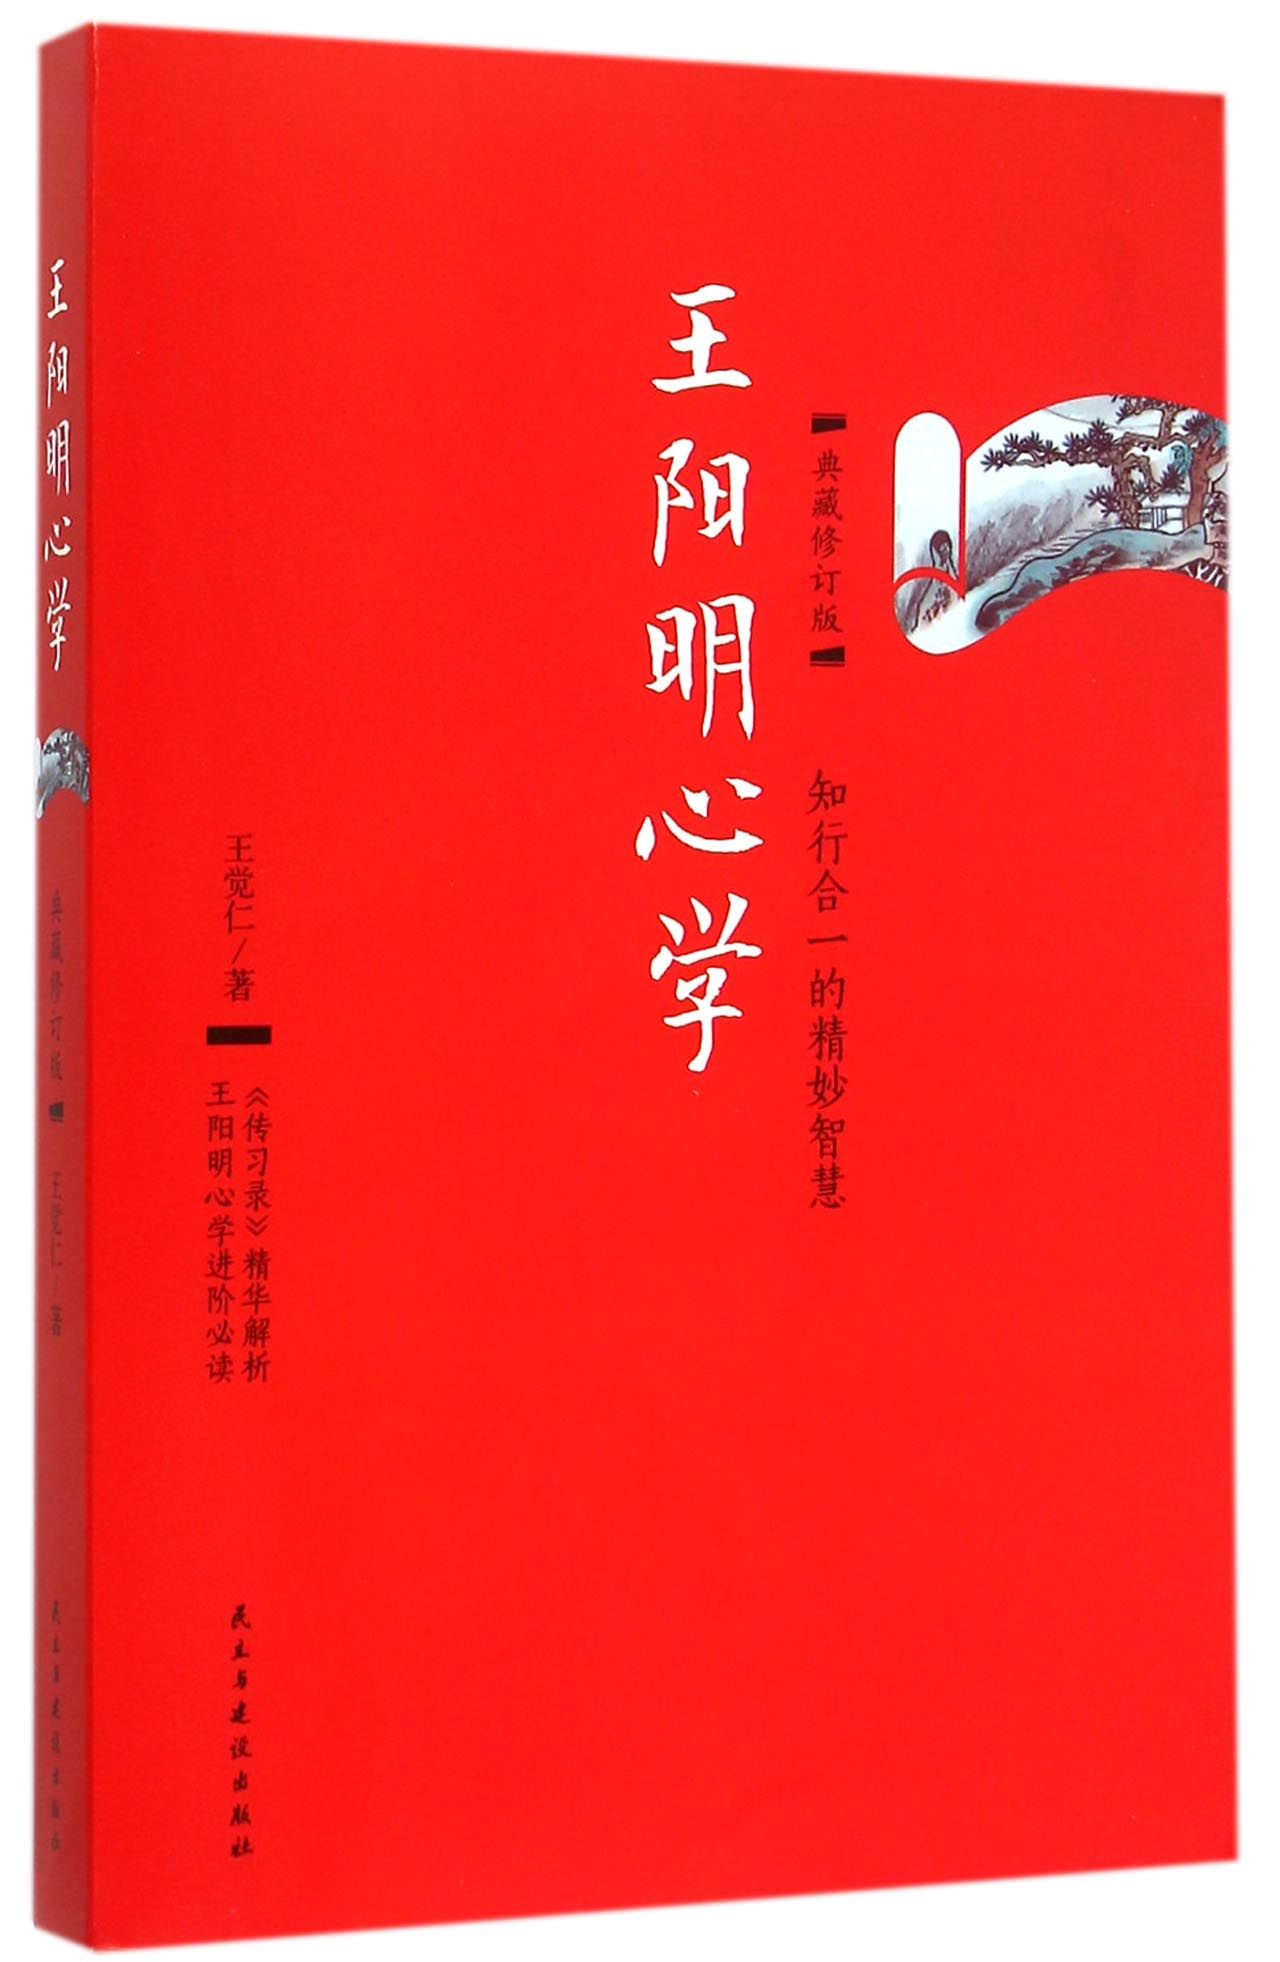 王阳明心学(典藏修订版) azw3格式下载